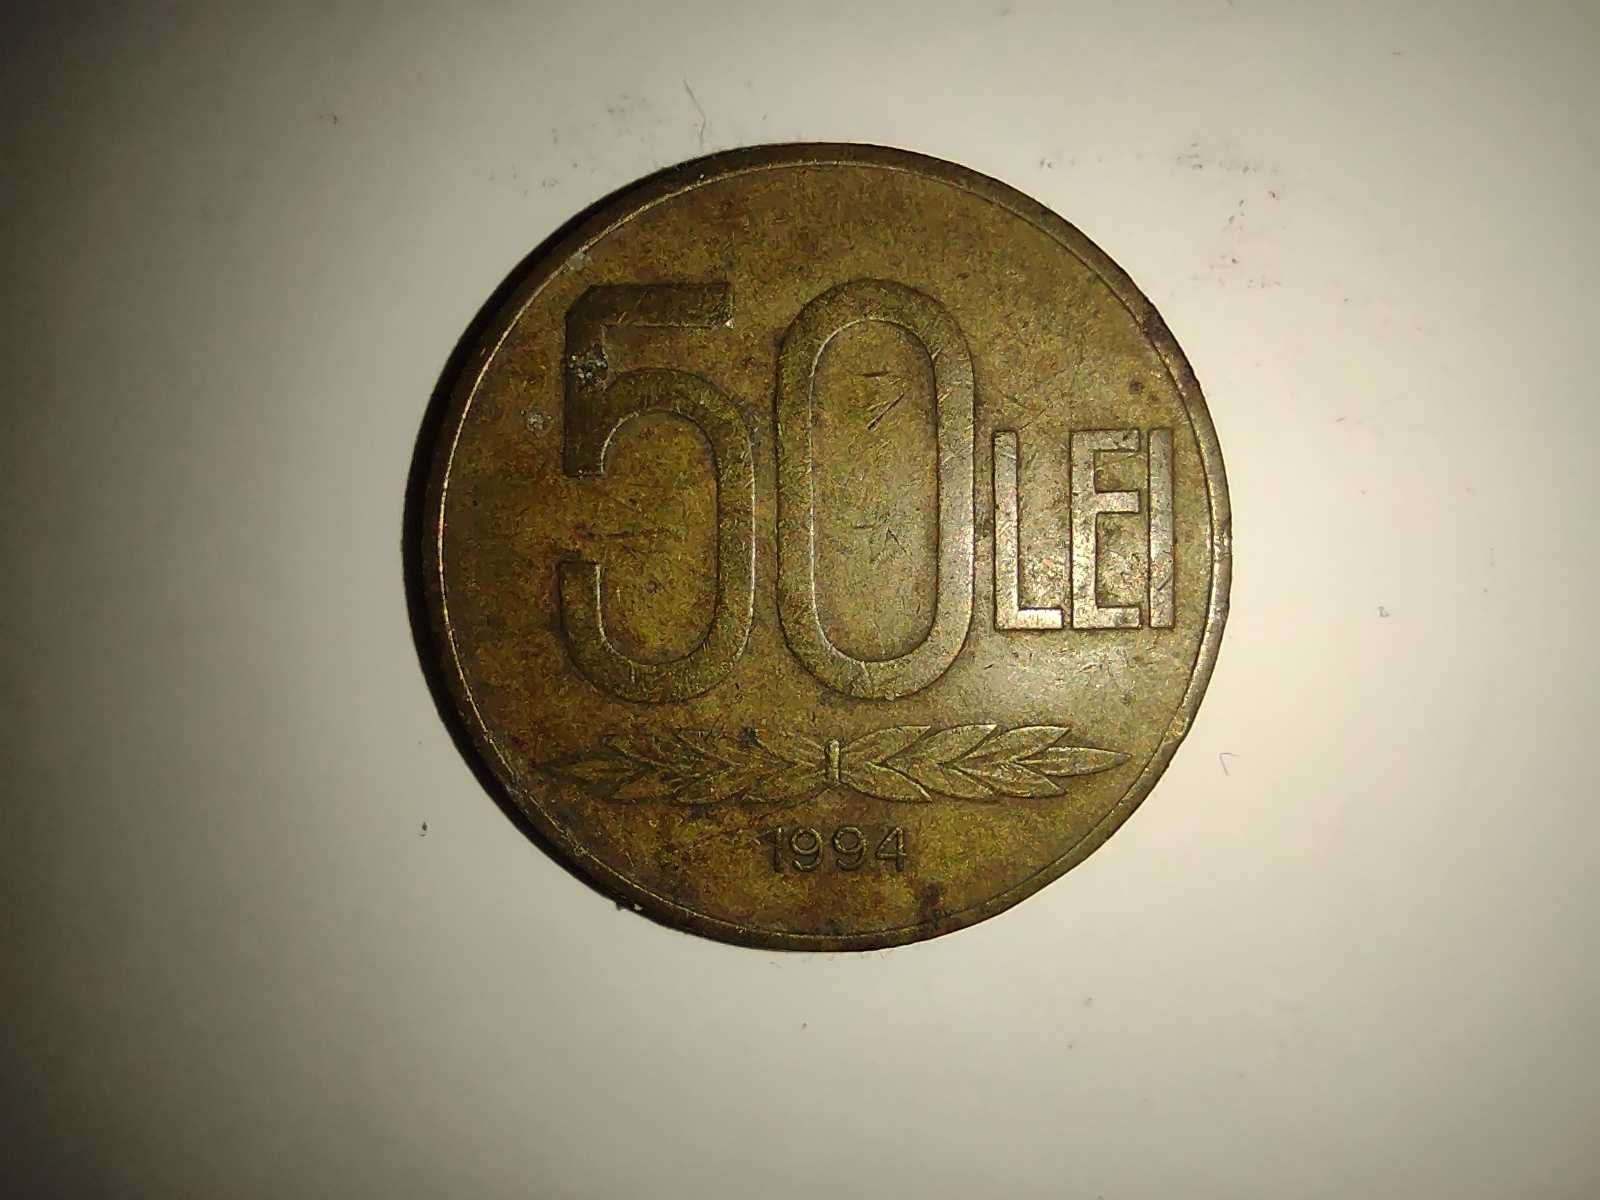 Vand una moneda in valoare de 50 lei, an 1994 stare foarte buna!